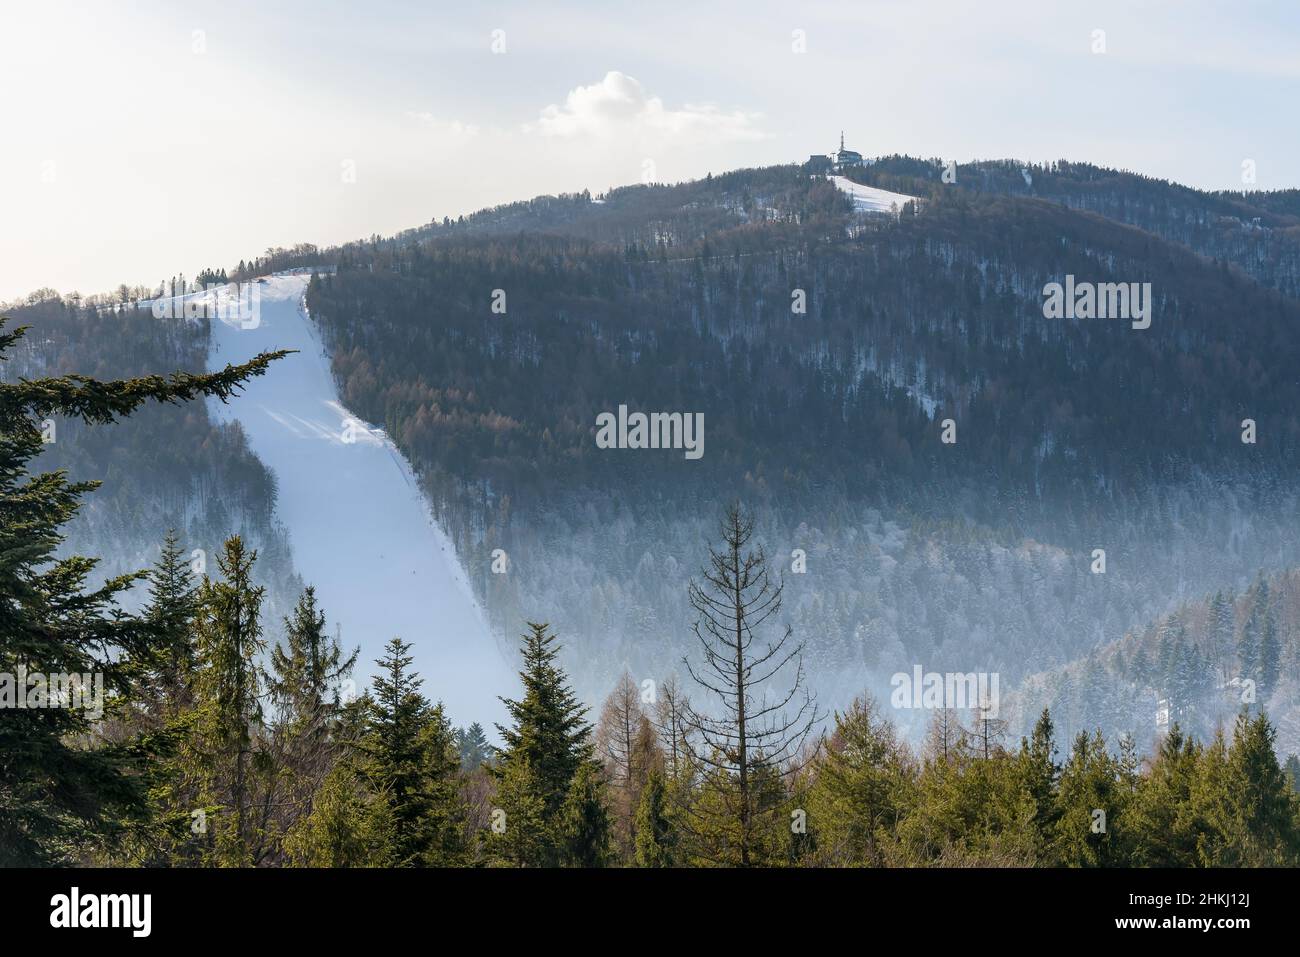 Vista de la pista de esquí en la montaña Jaworzyna Krynicka cerca de Krynica Zdroj, Polonia Foto de stock